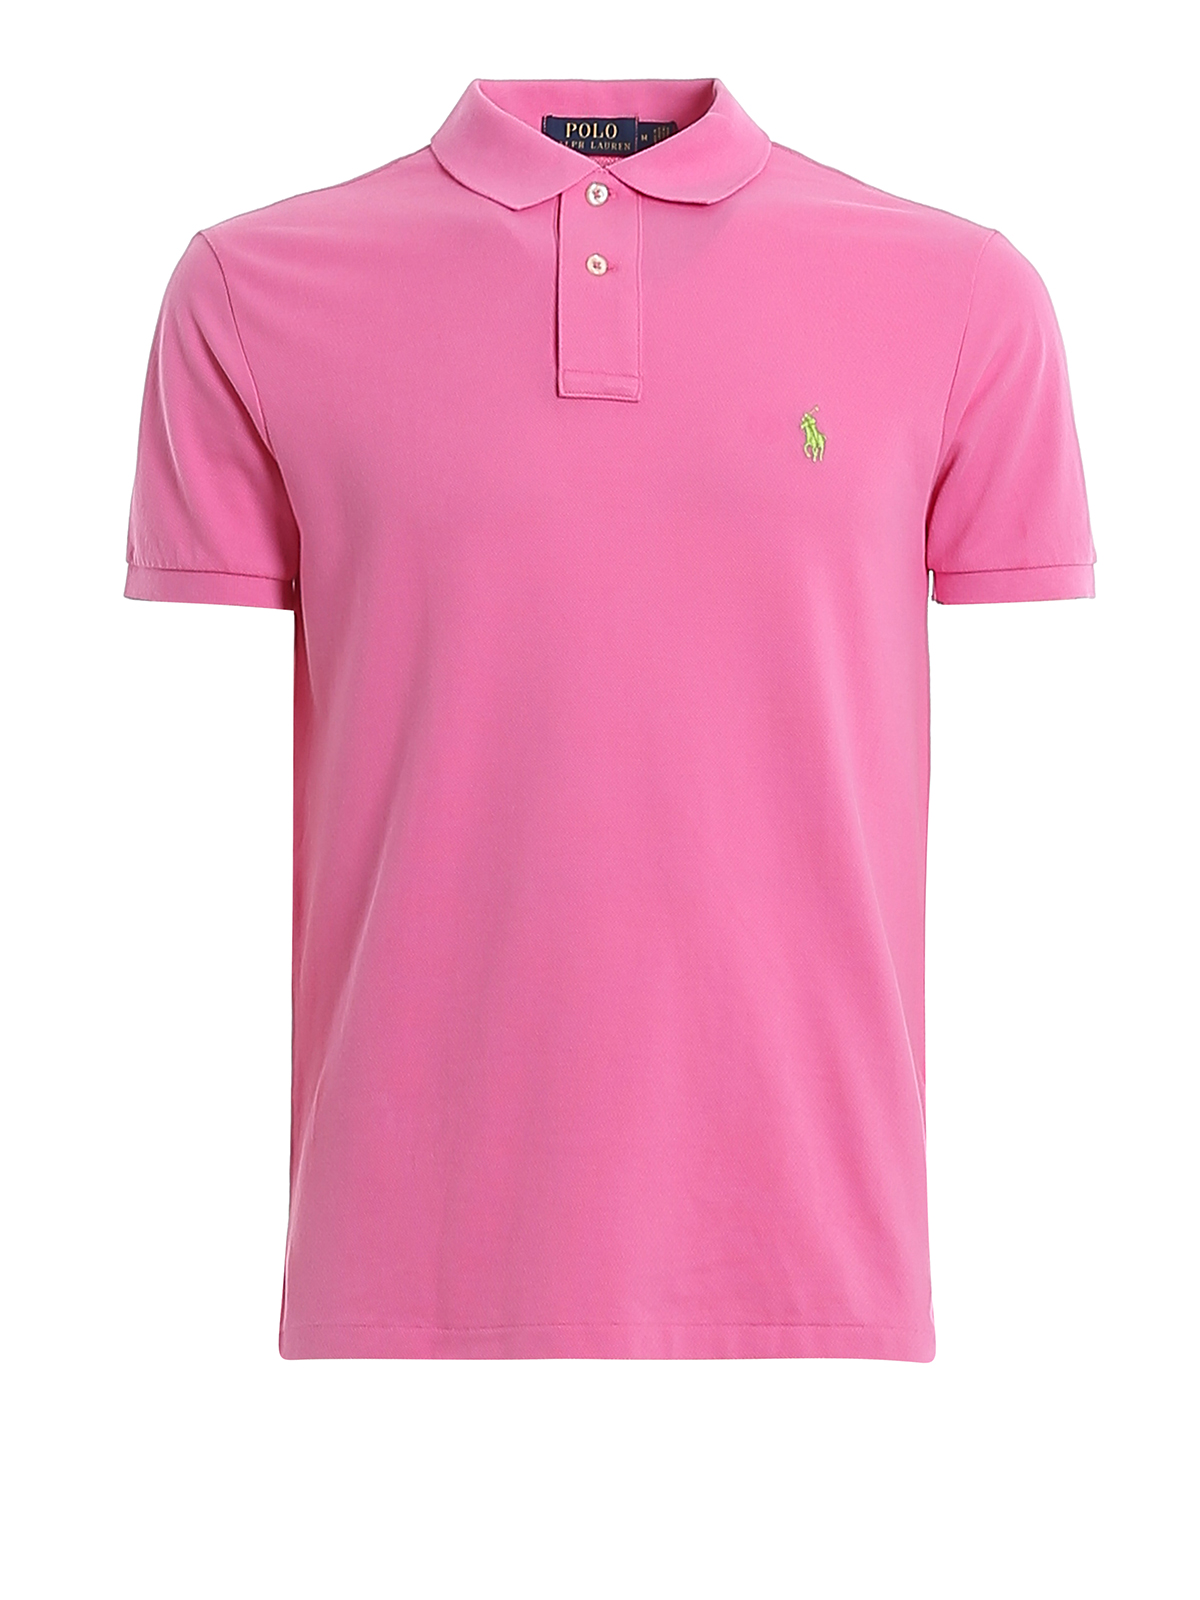 Polo Ralph Lauren Logo Embroidery Pink Pique Polo Shirt